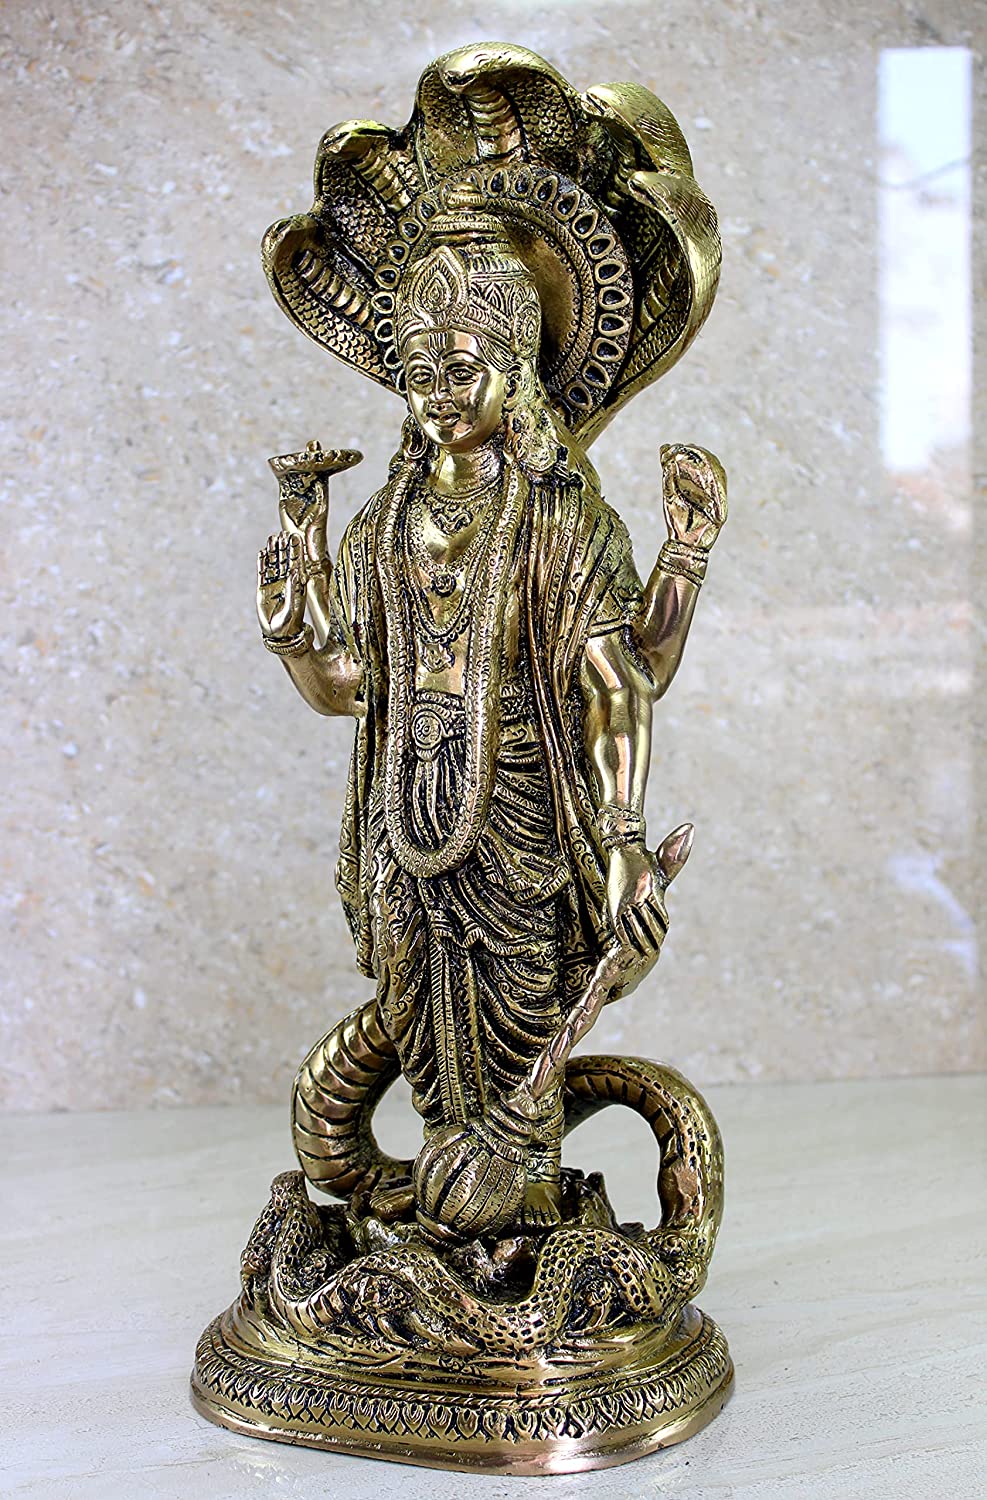 eSplanade Resina Lord Vishnu Narayana Estatua Moorti Murti Idol Pooja Ídolos Decoración del Hogar 12.5 pulgadas 